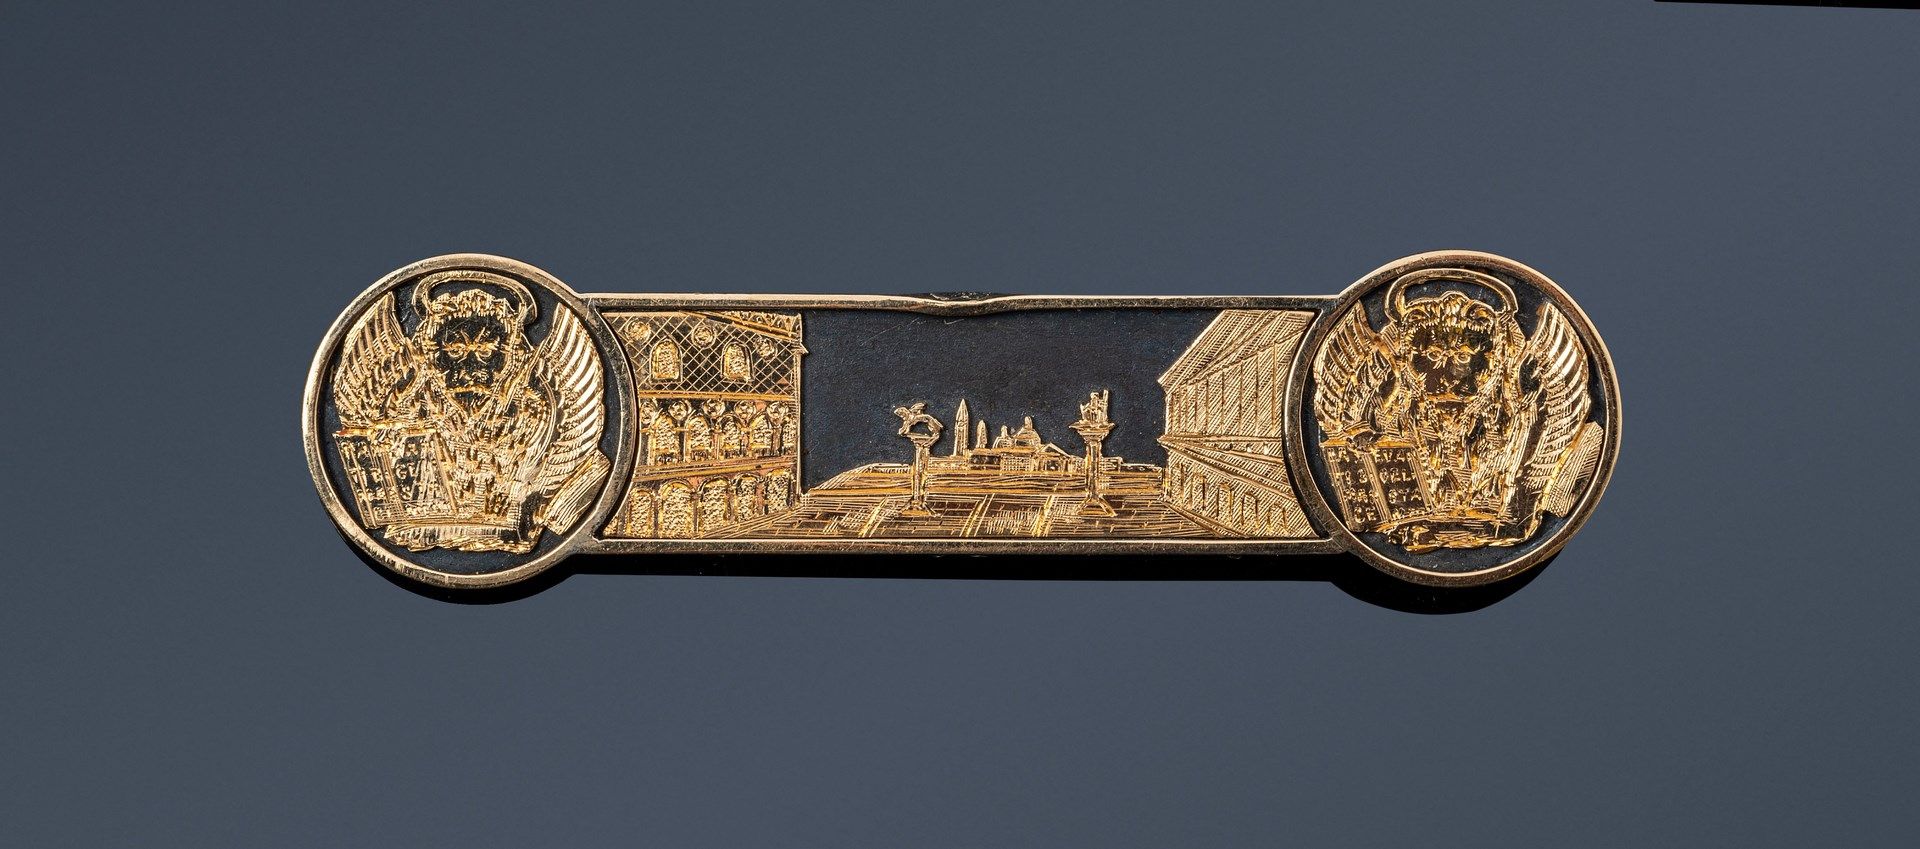 Null 代表威尼斯广场的银质和14K（585）黄金胸针，两侧装饰有圣马可狮子。

20世纪的意大利作品。

长度：7.5厘米左右。- 毛重：19.5克